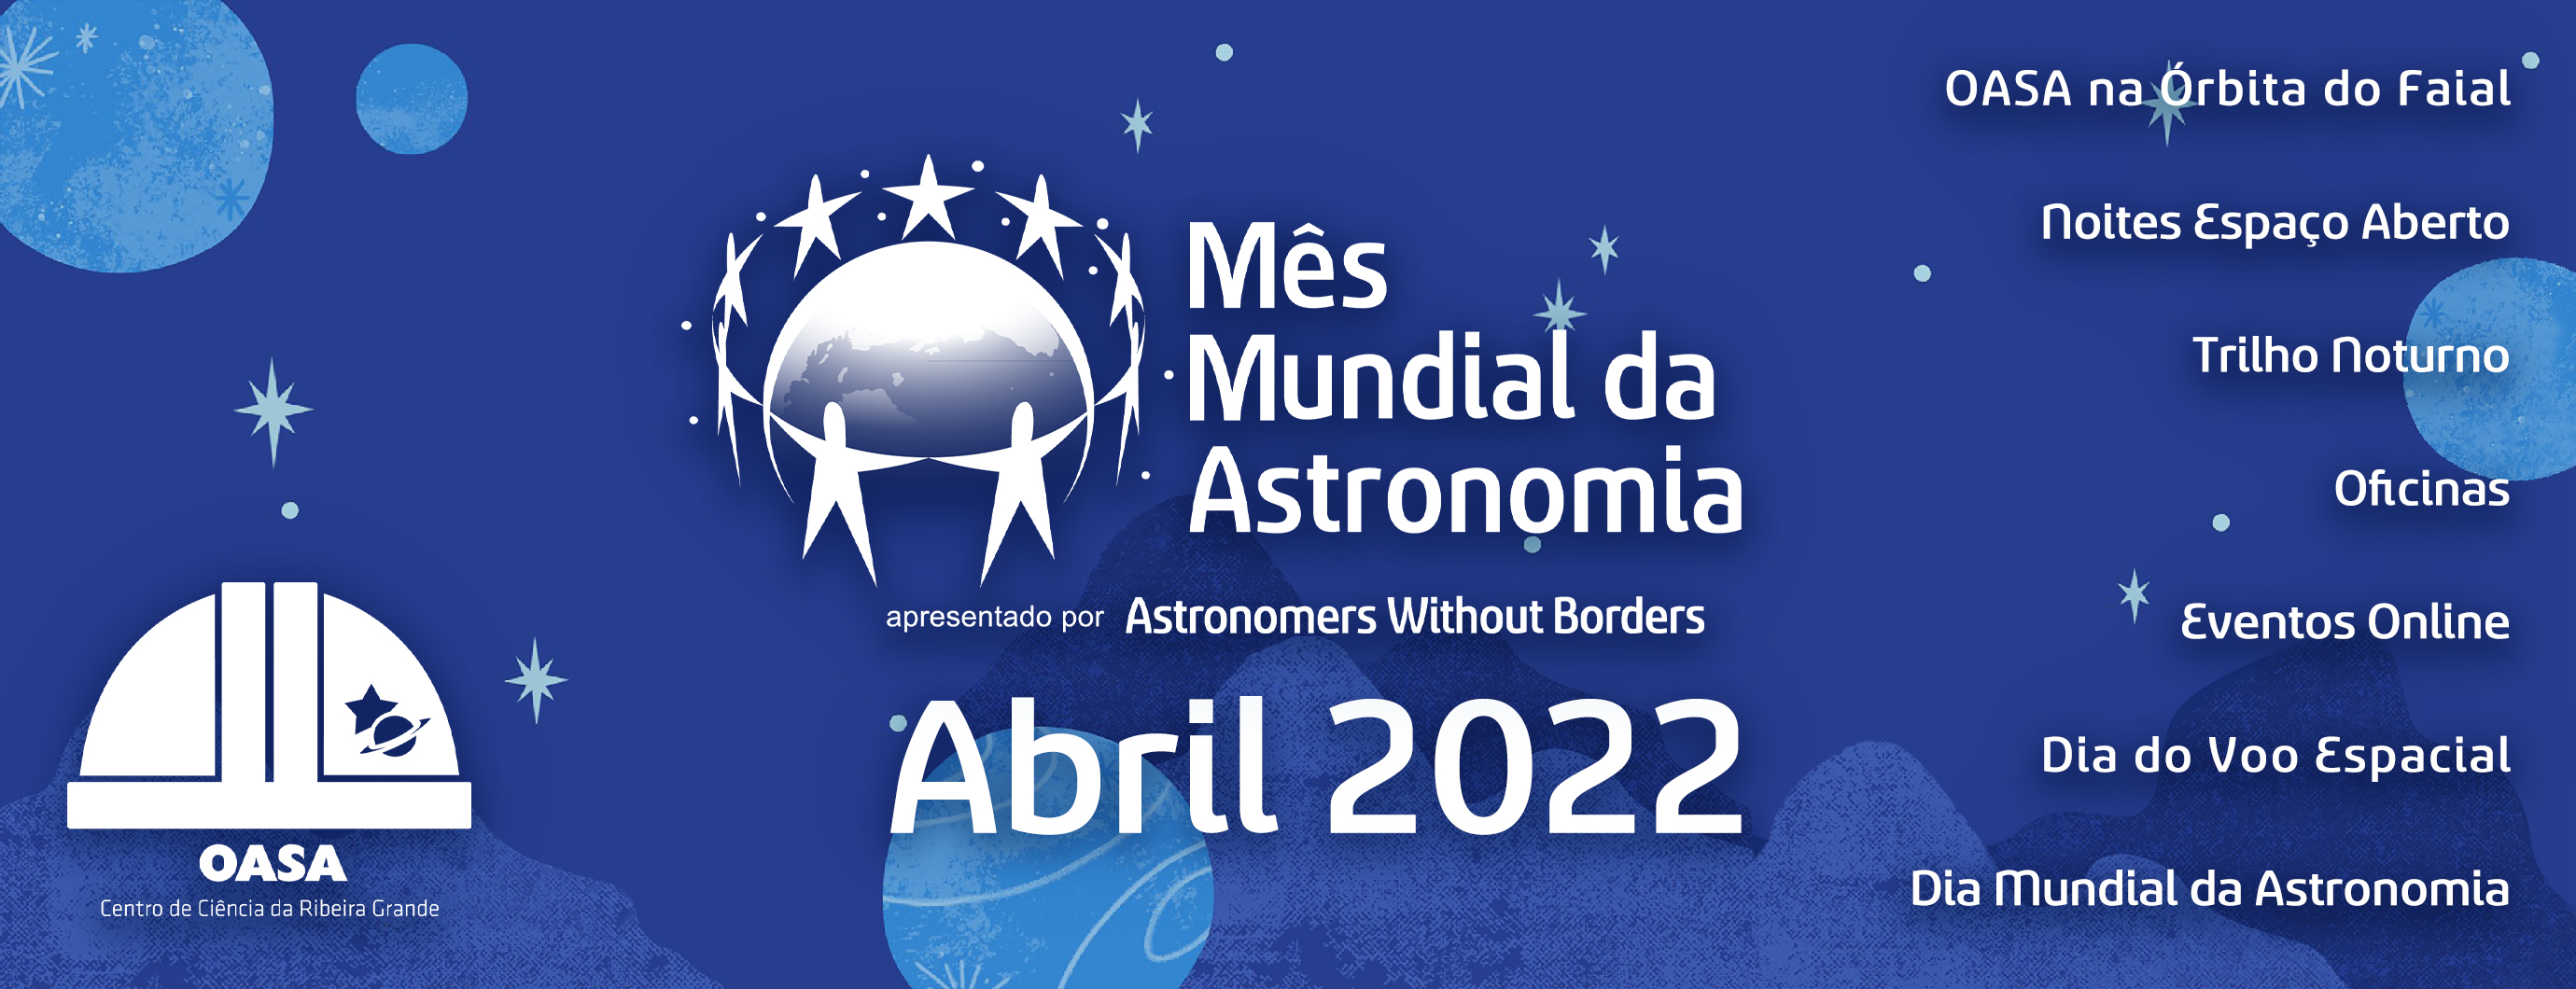 Mês Mundial da Astronomia 2022 | Observatório Astronómico de Santana - Açores